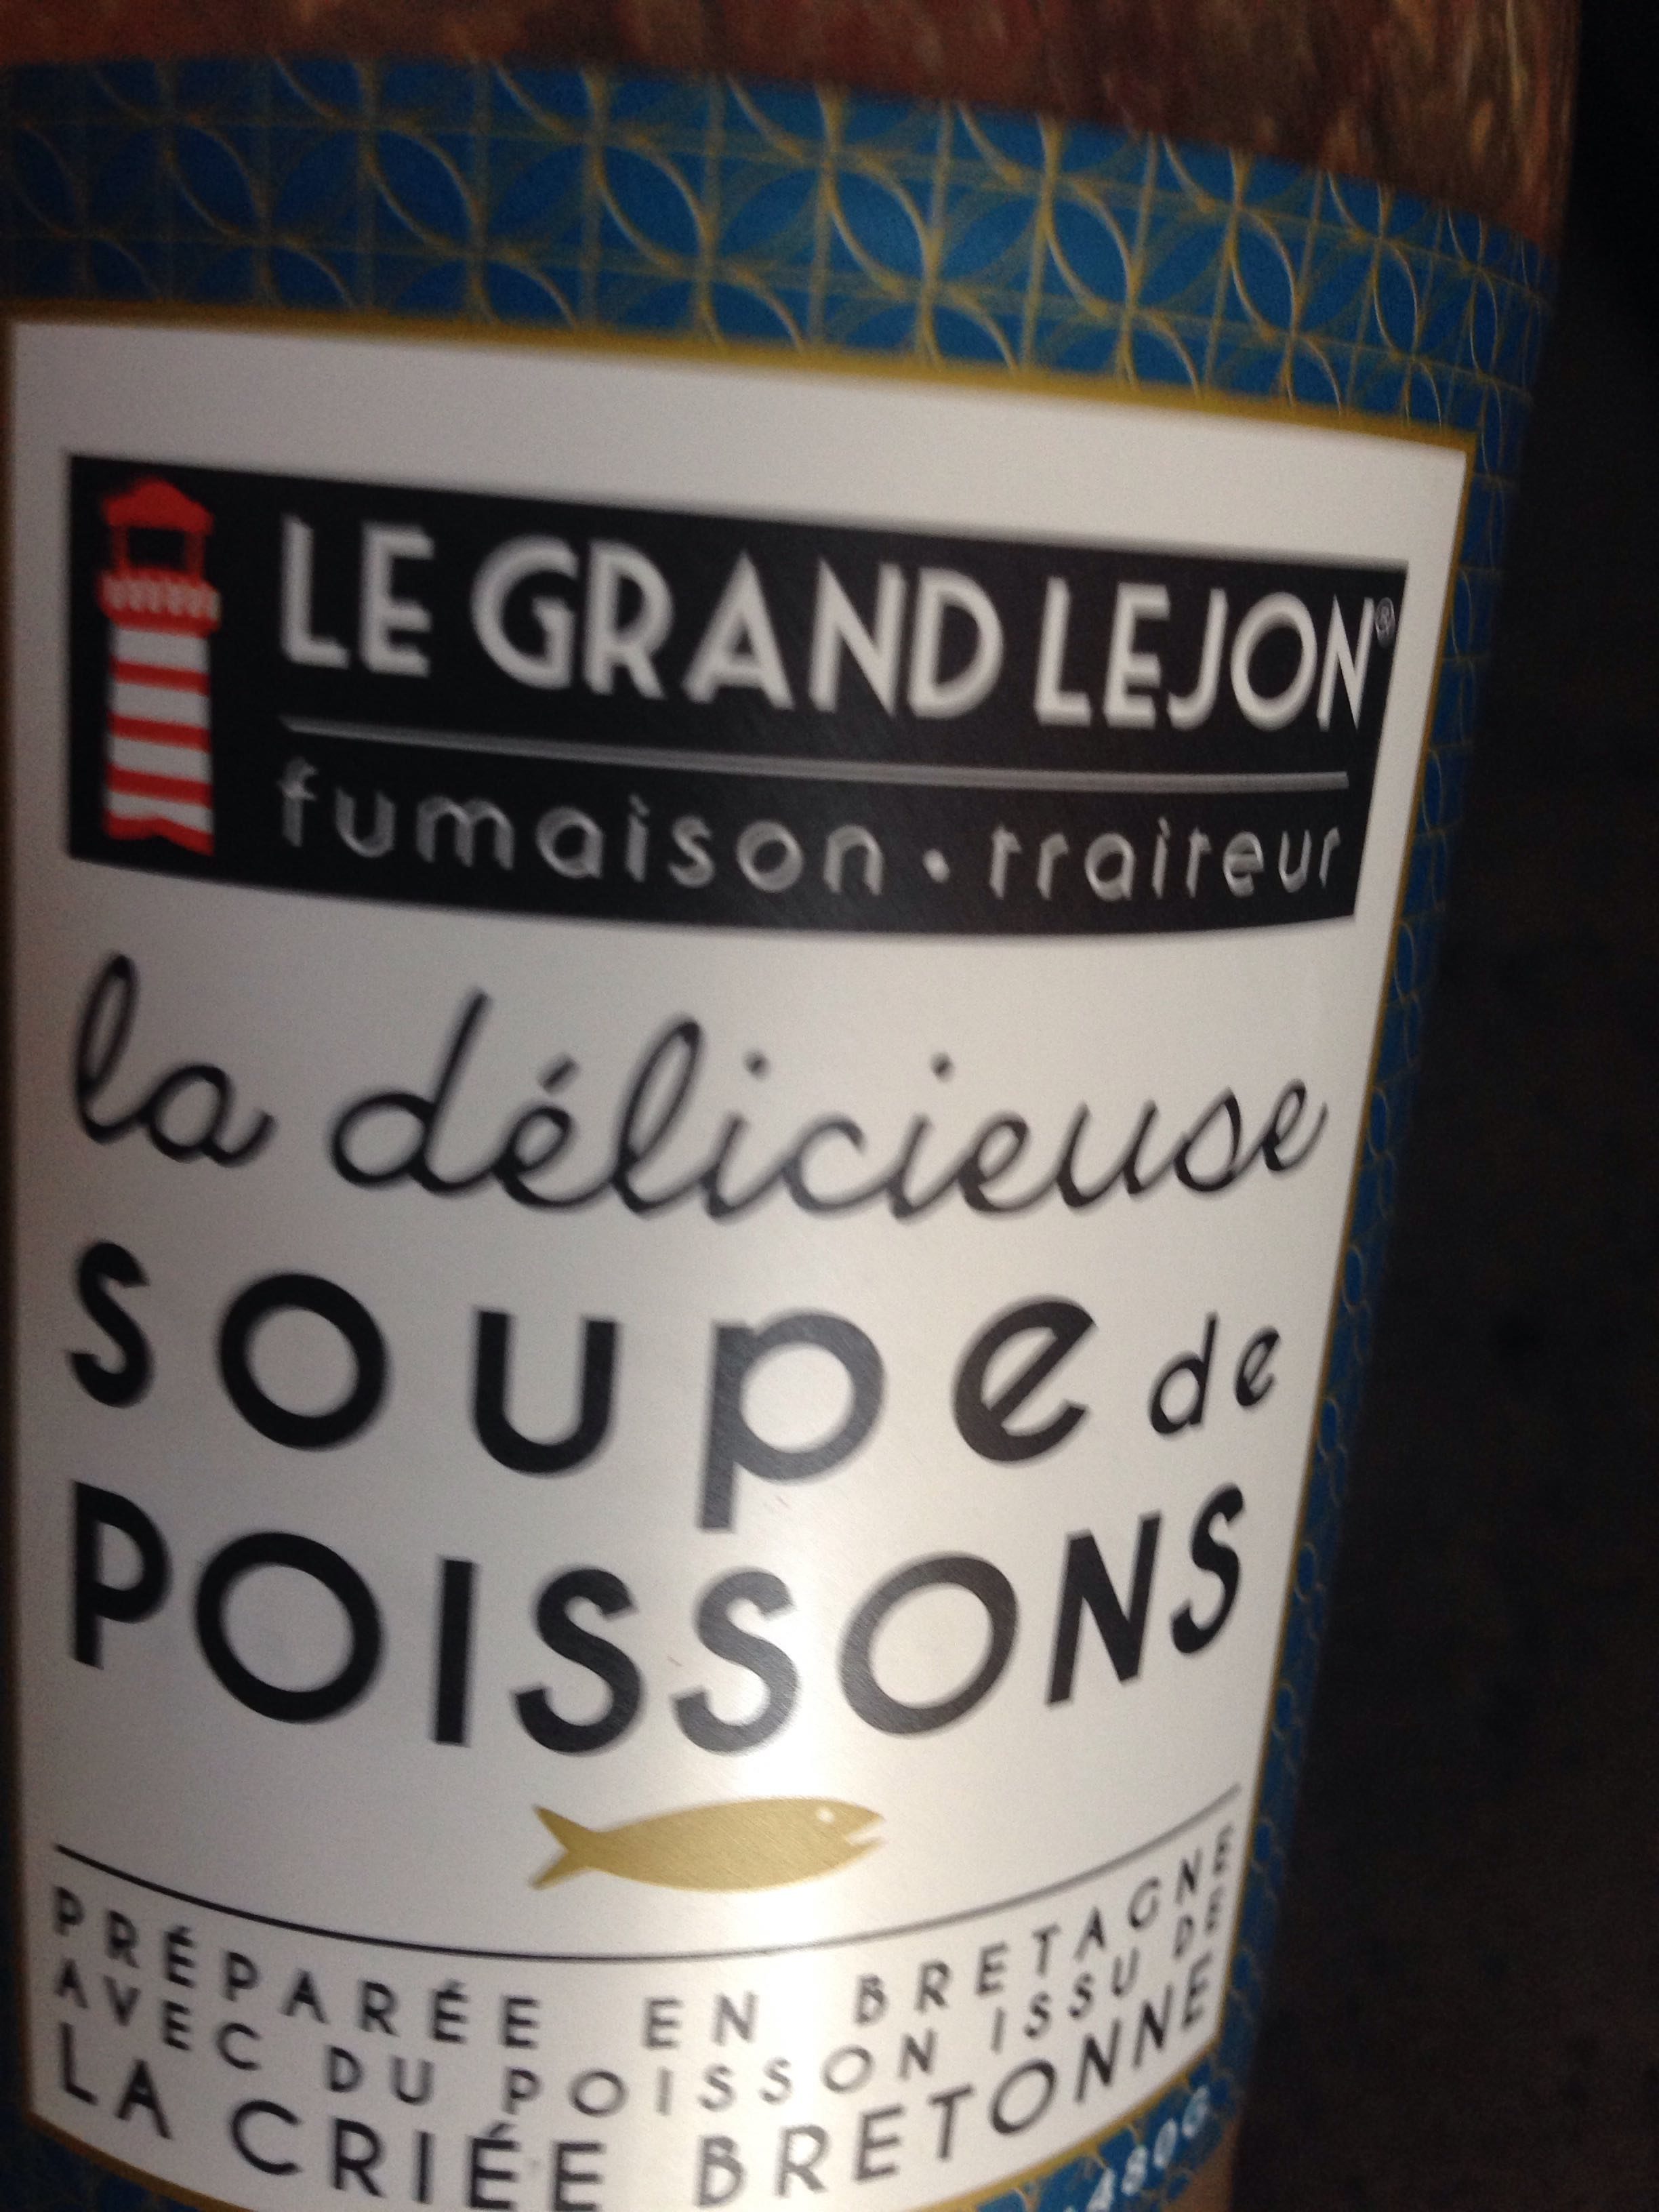 Soupe de poisson LE GRAND LEJON - Product - fr